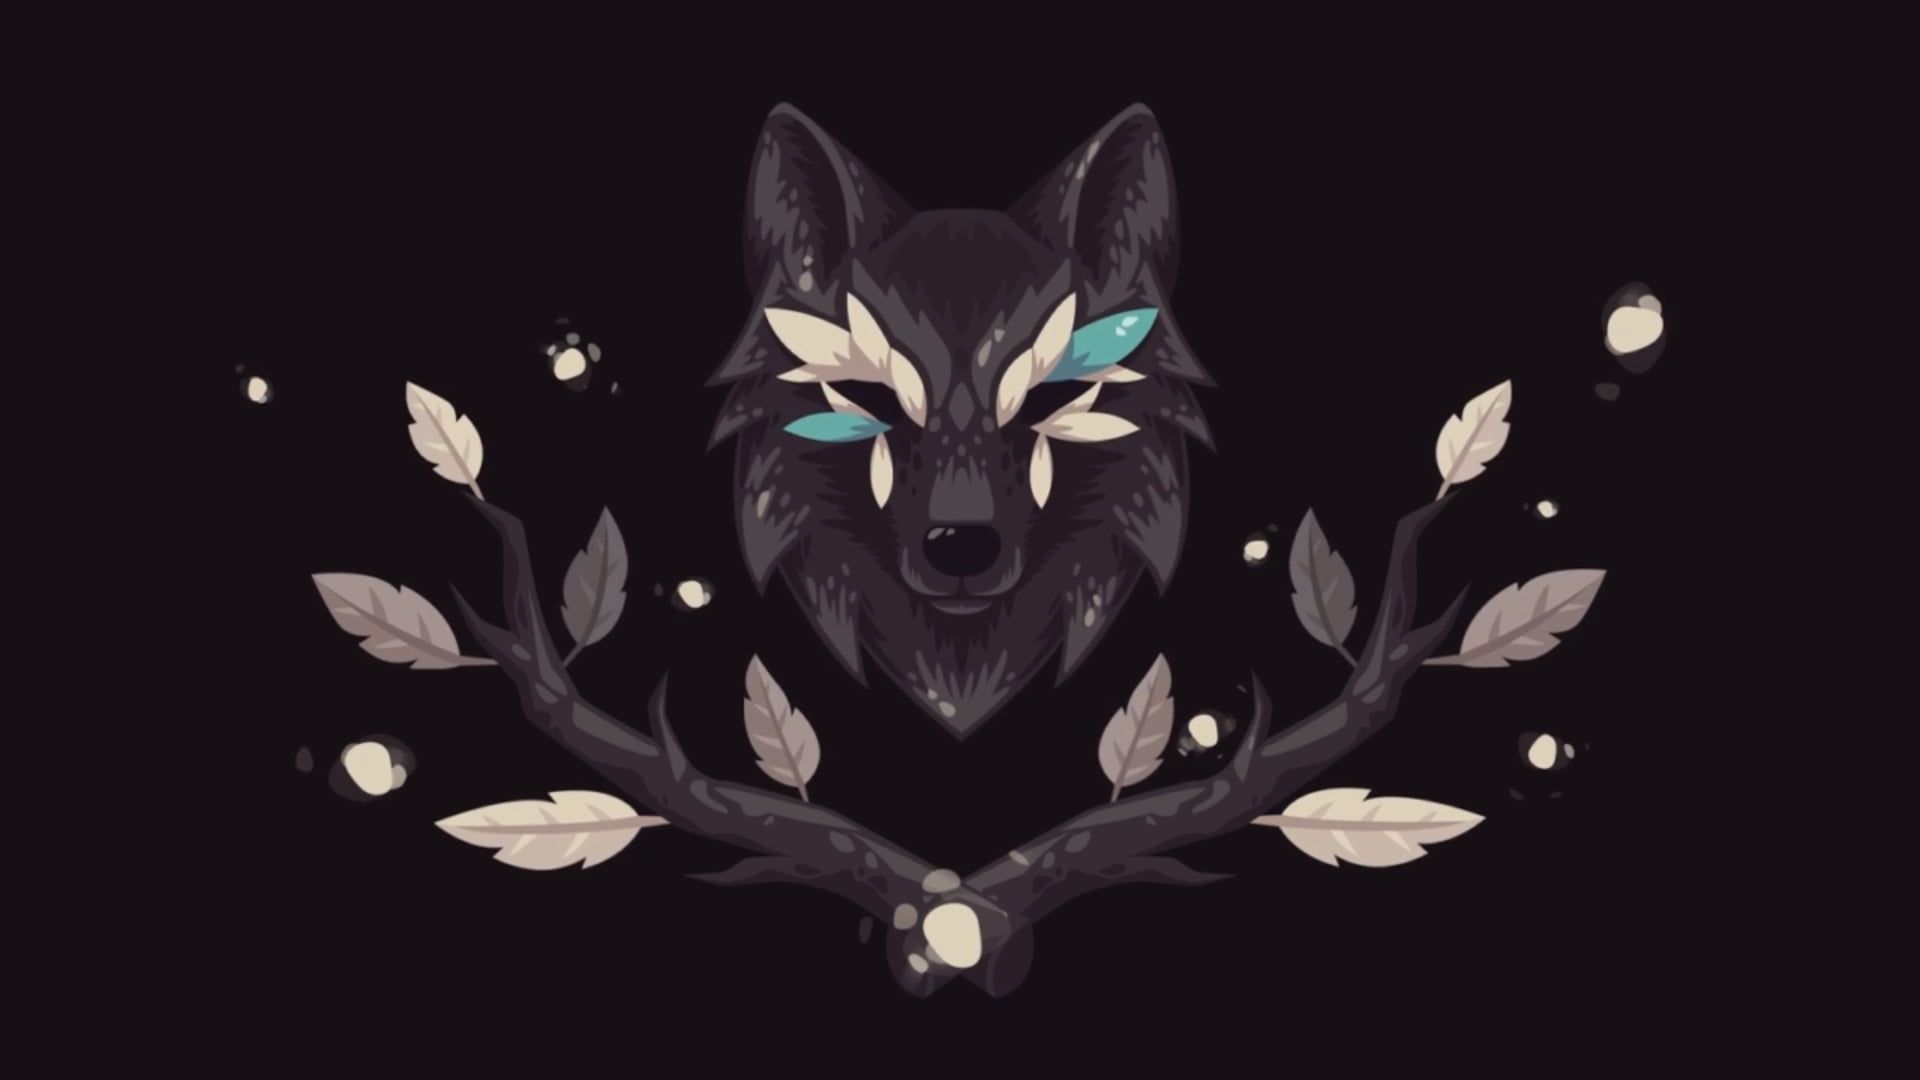 black fox illustration #wolf #black #animals #artwork P #wallpaper #hdwallpaper #desktop. Fox illustration, Live wallpaper, Wolf wallpaper